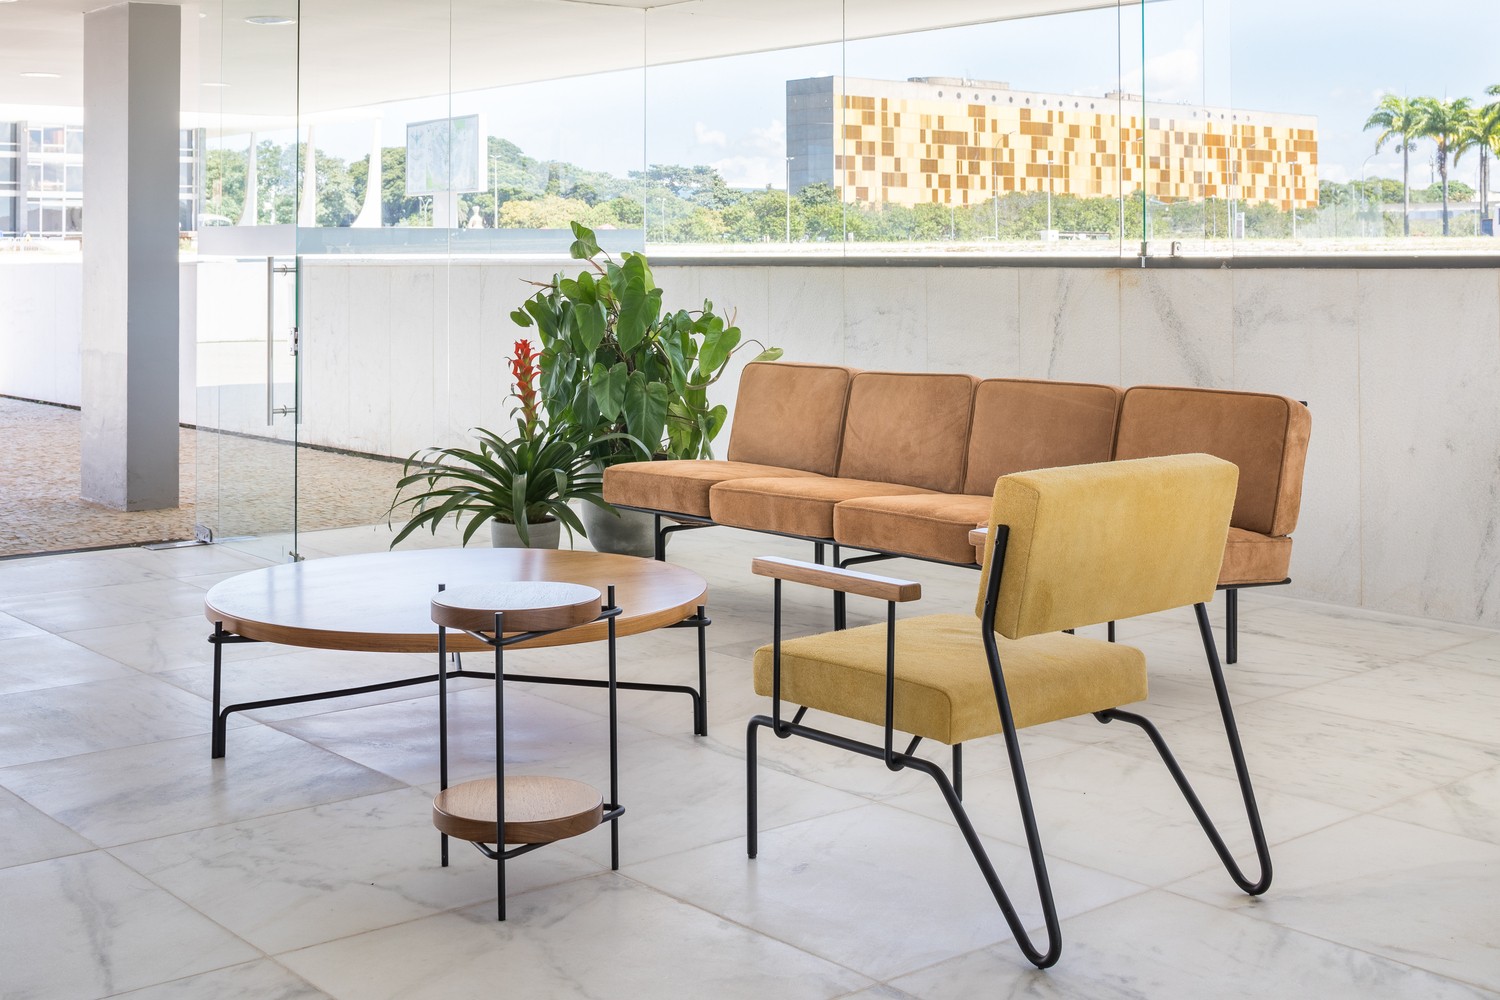 Antiga Casa de Chá, de Oscar Niemeyer, é revitalizada em Brasília (Foto: Divulgação)